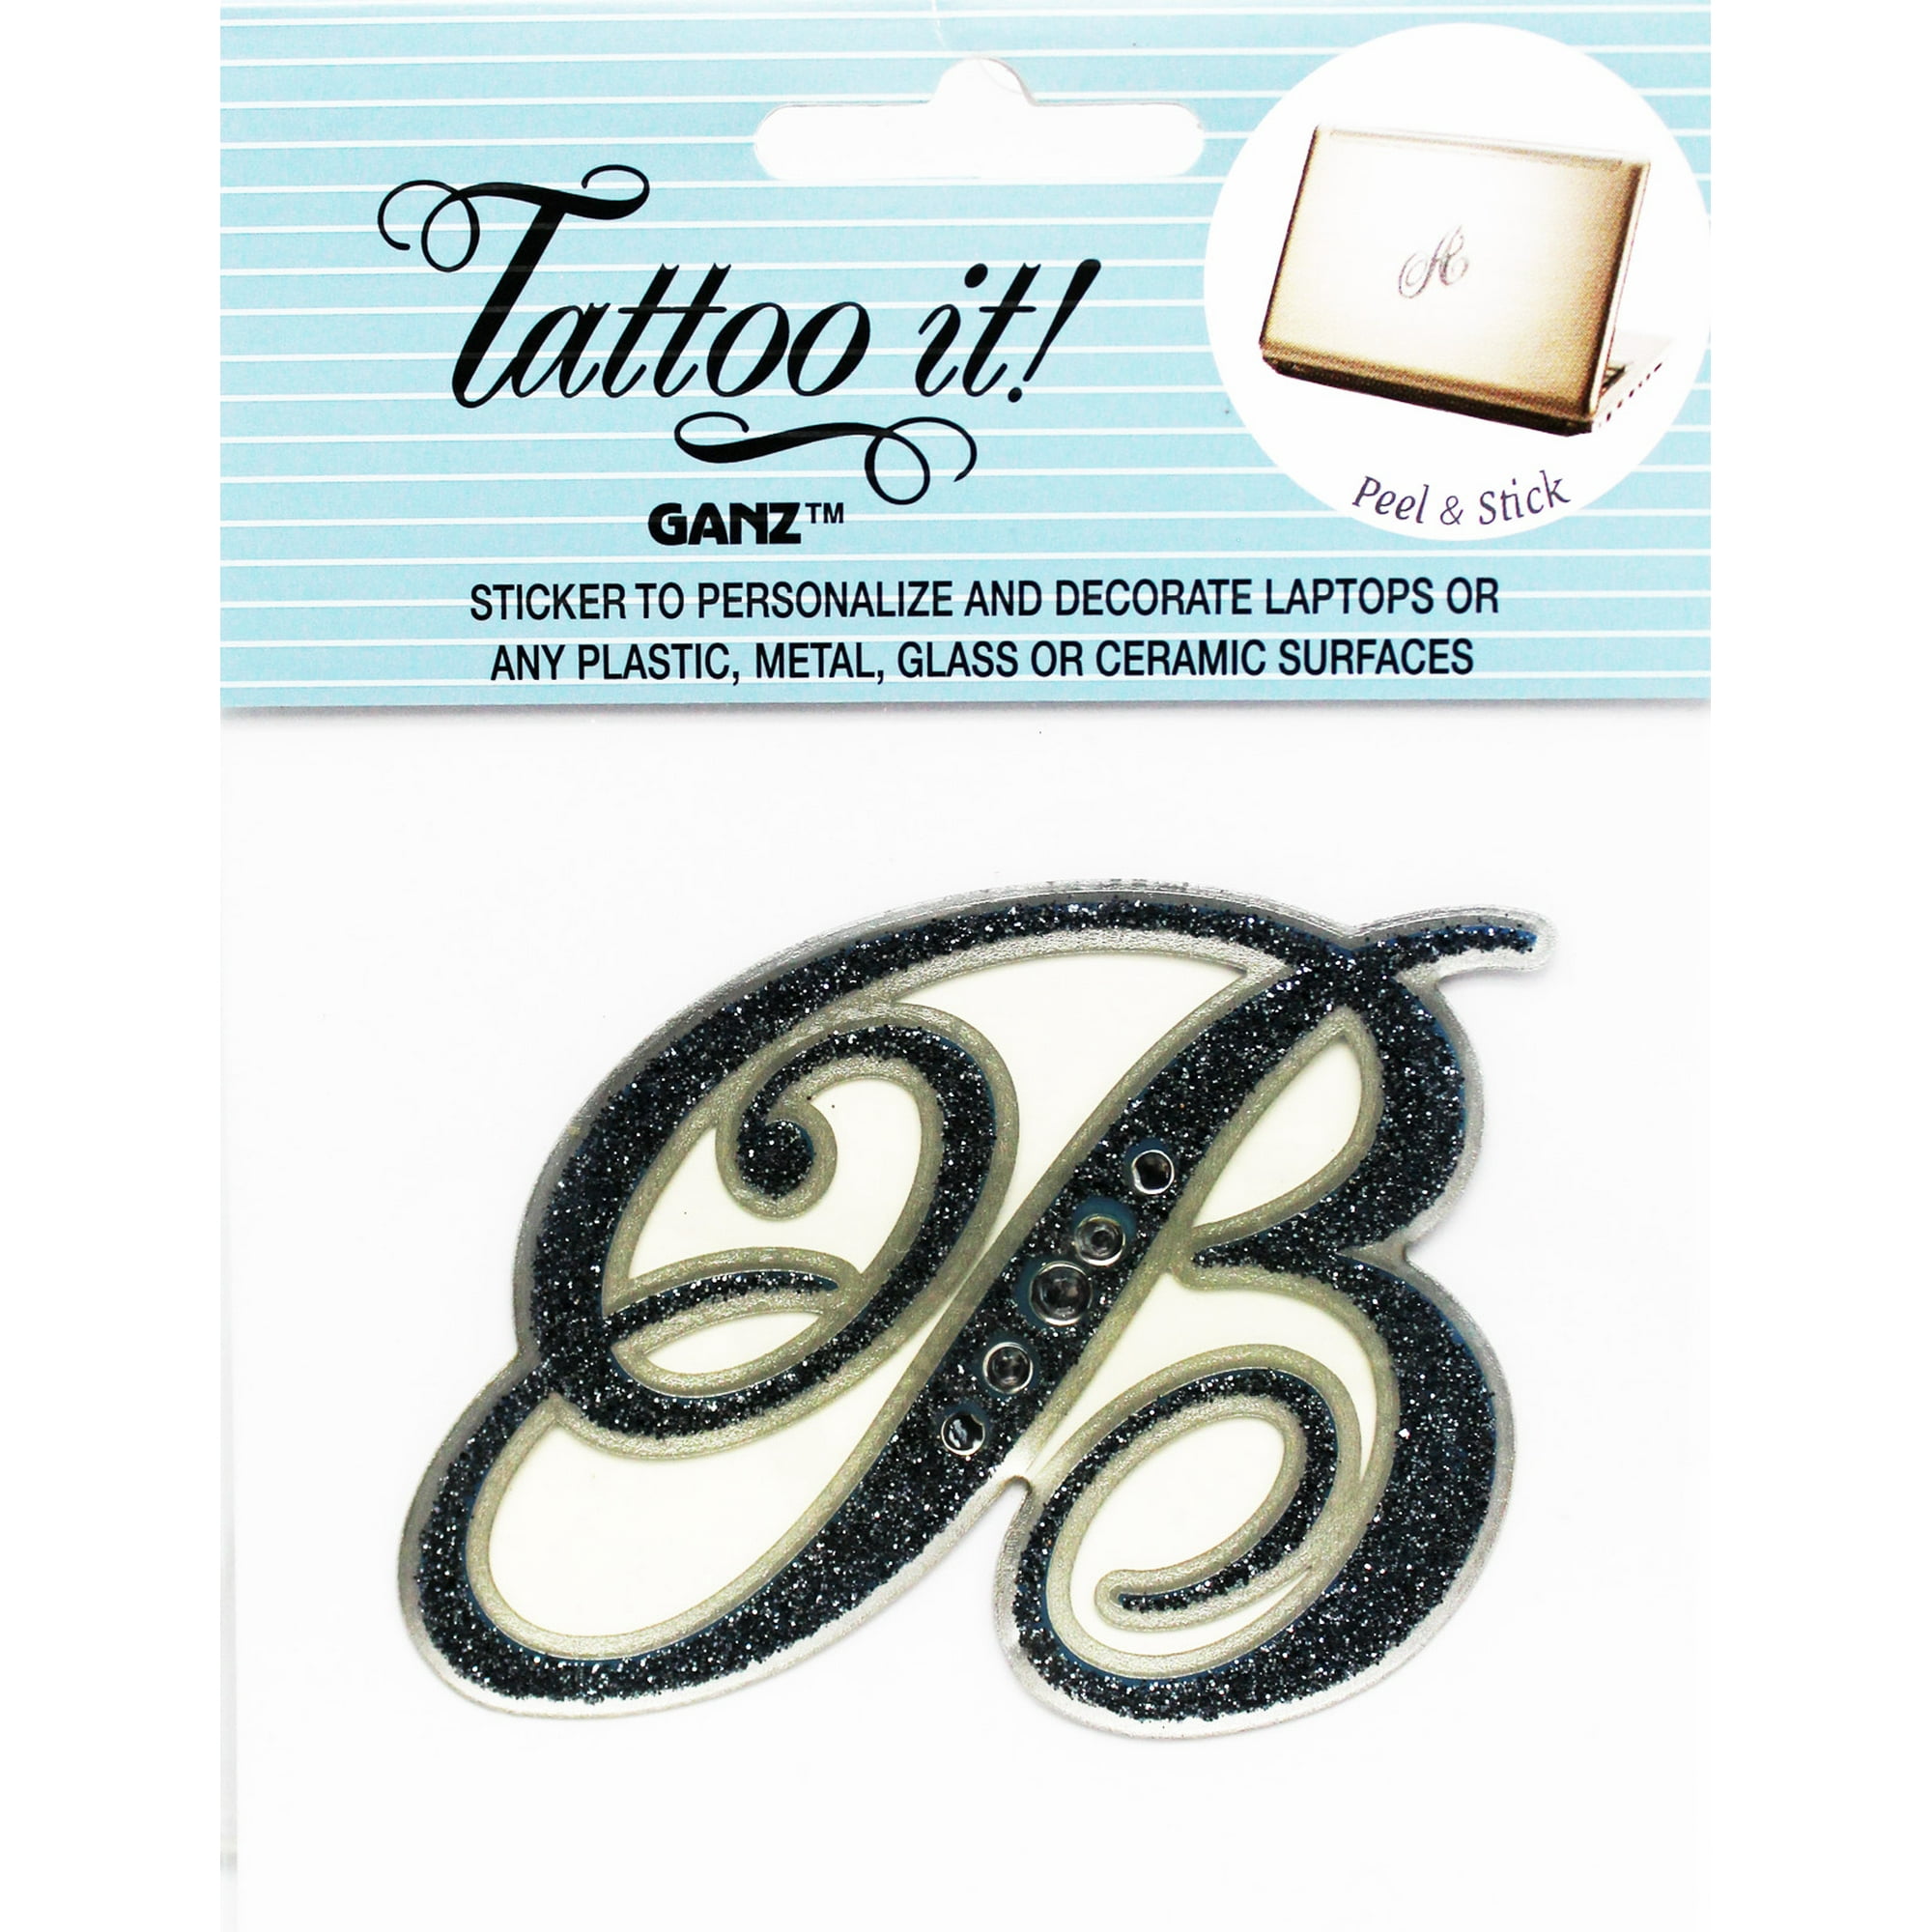 cursive letter b tattoo